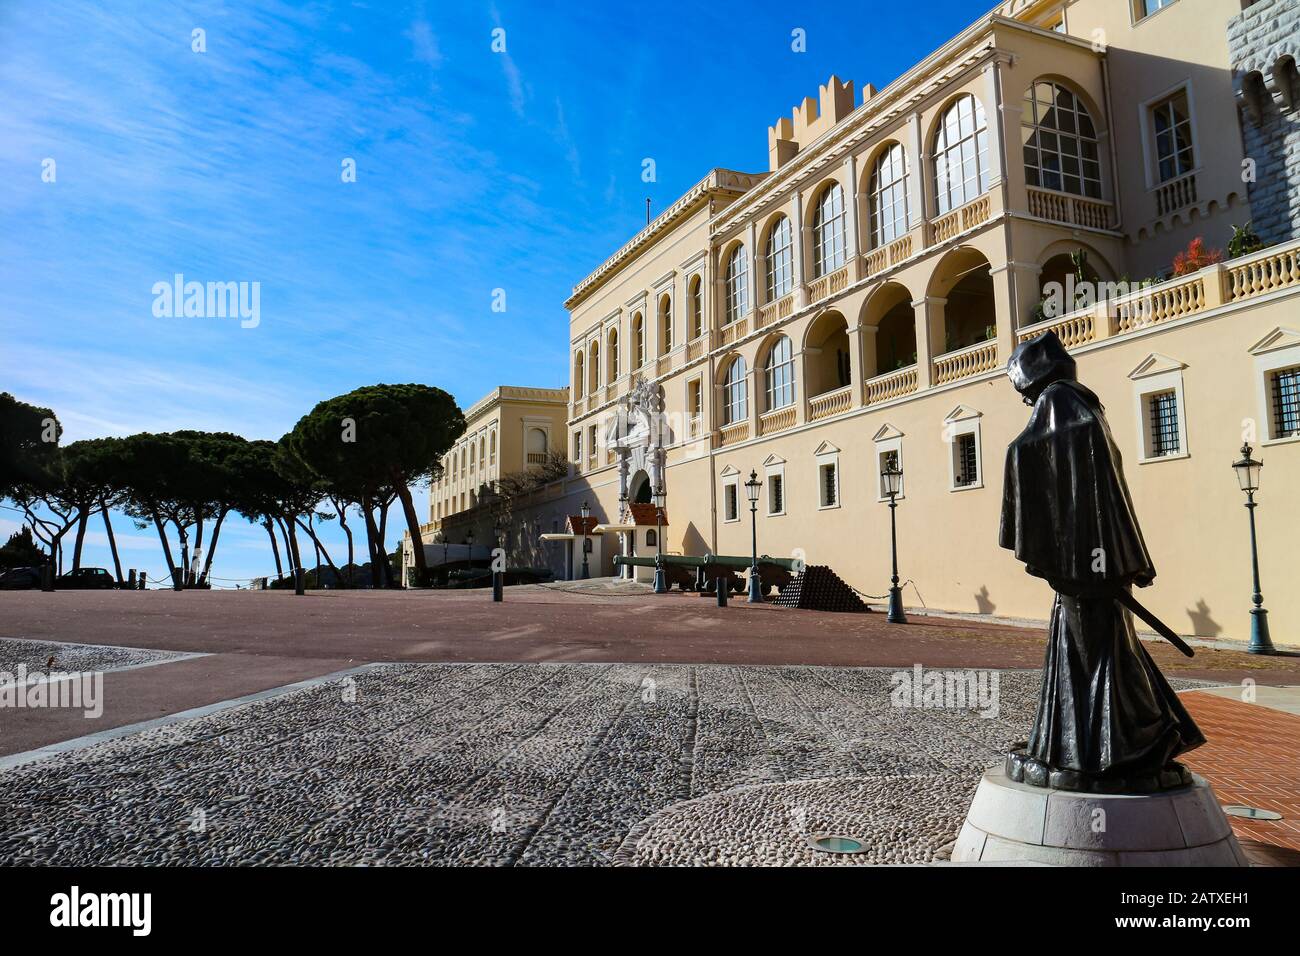 Monaco-Ville, Monaco - 28. Januar 2020: Palast des Prinzen von Monaco. Stockfoto